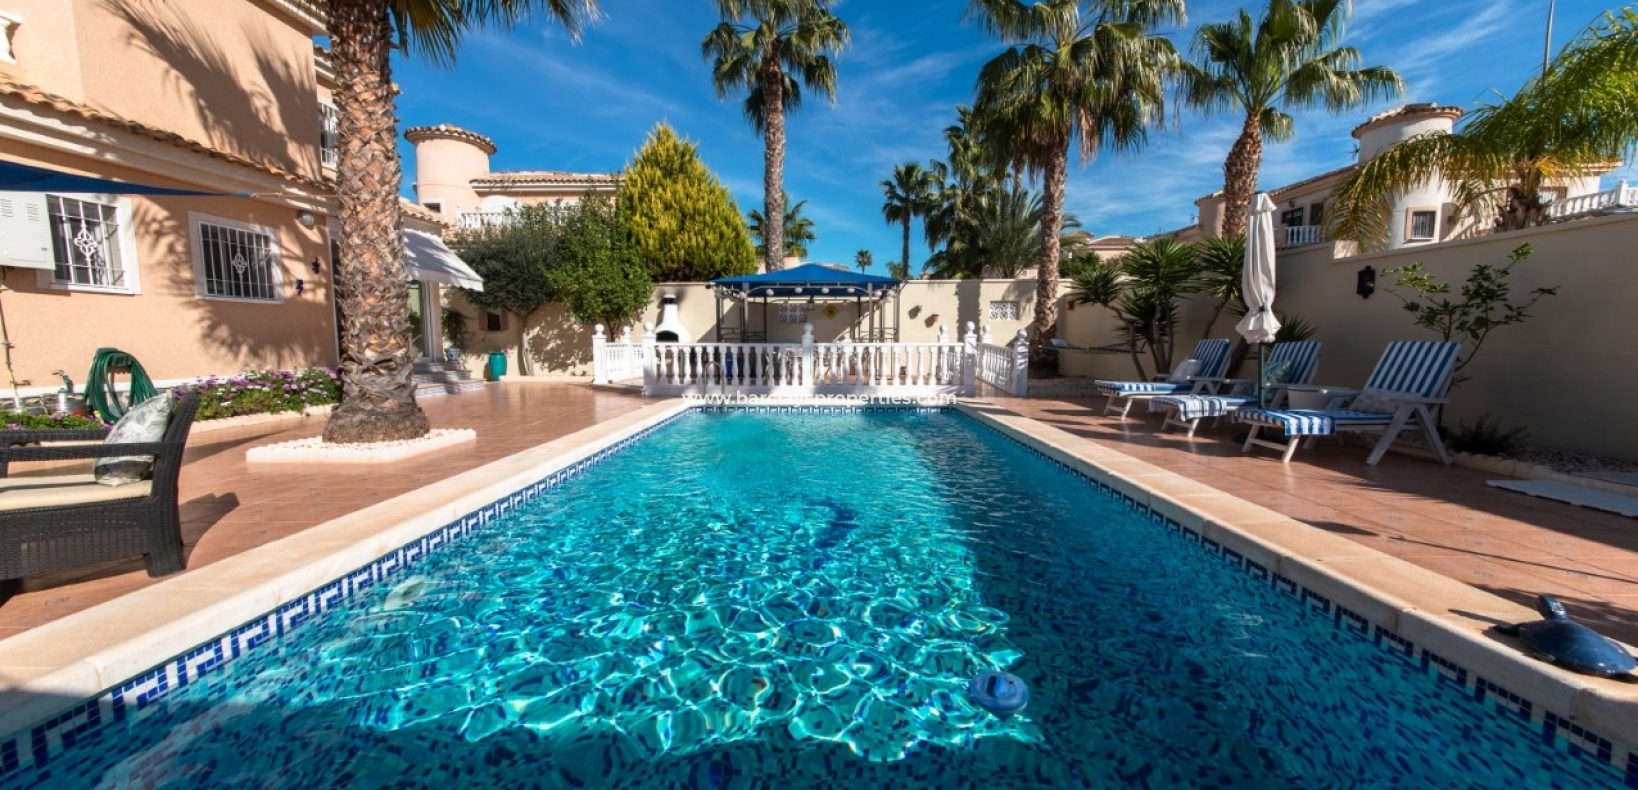 Zwembad - Prestige villa te koop in urbanisatie La Marina Spanje